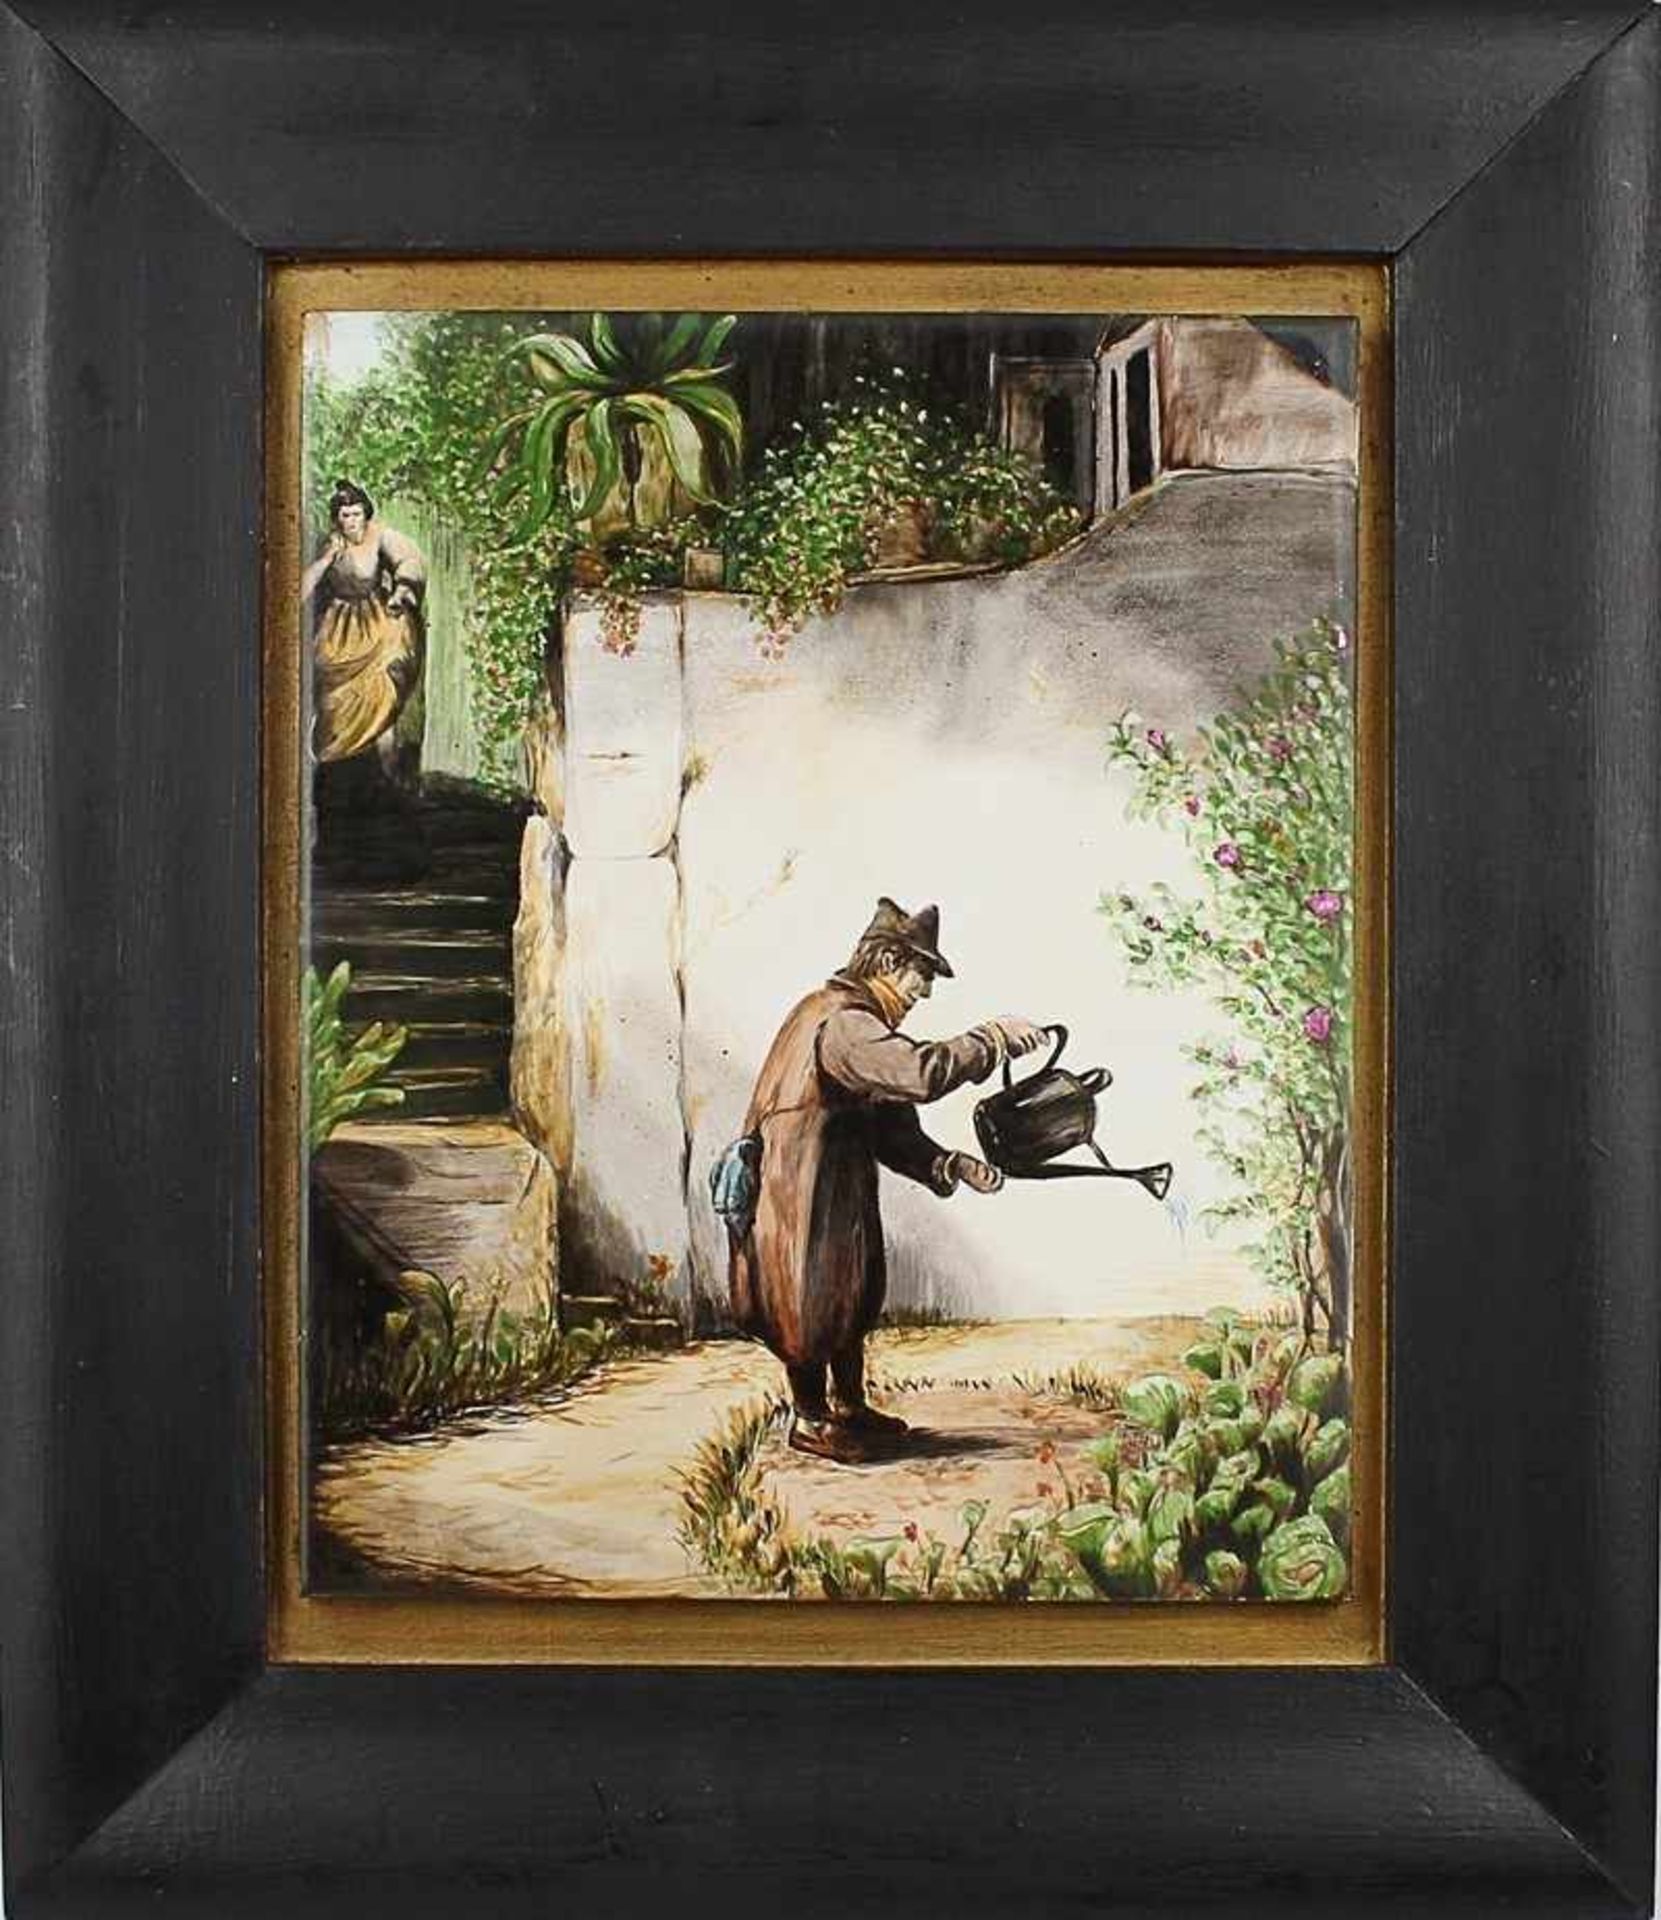 Bild hochrechteckiger Bildausschnitt, Kakteen gießender Herr im Garten, nach Motiven von Spitzweg,